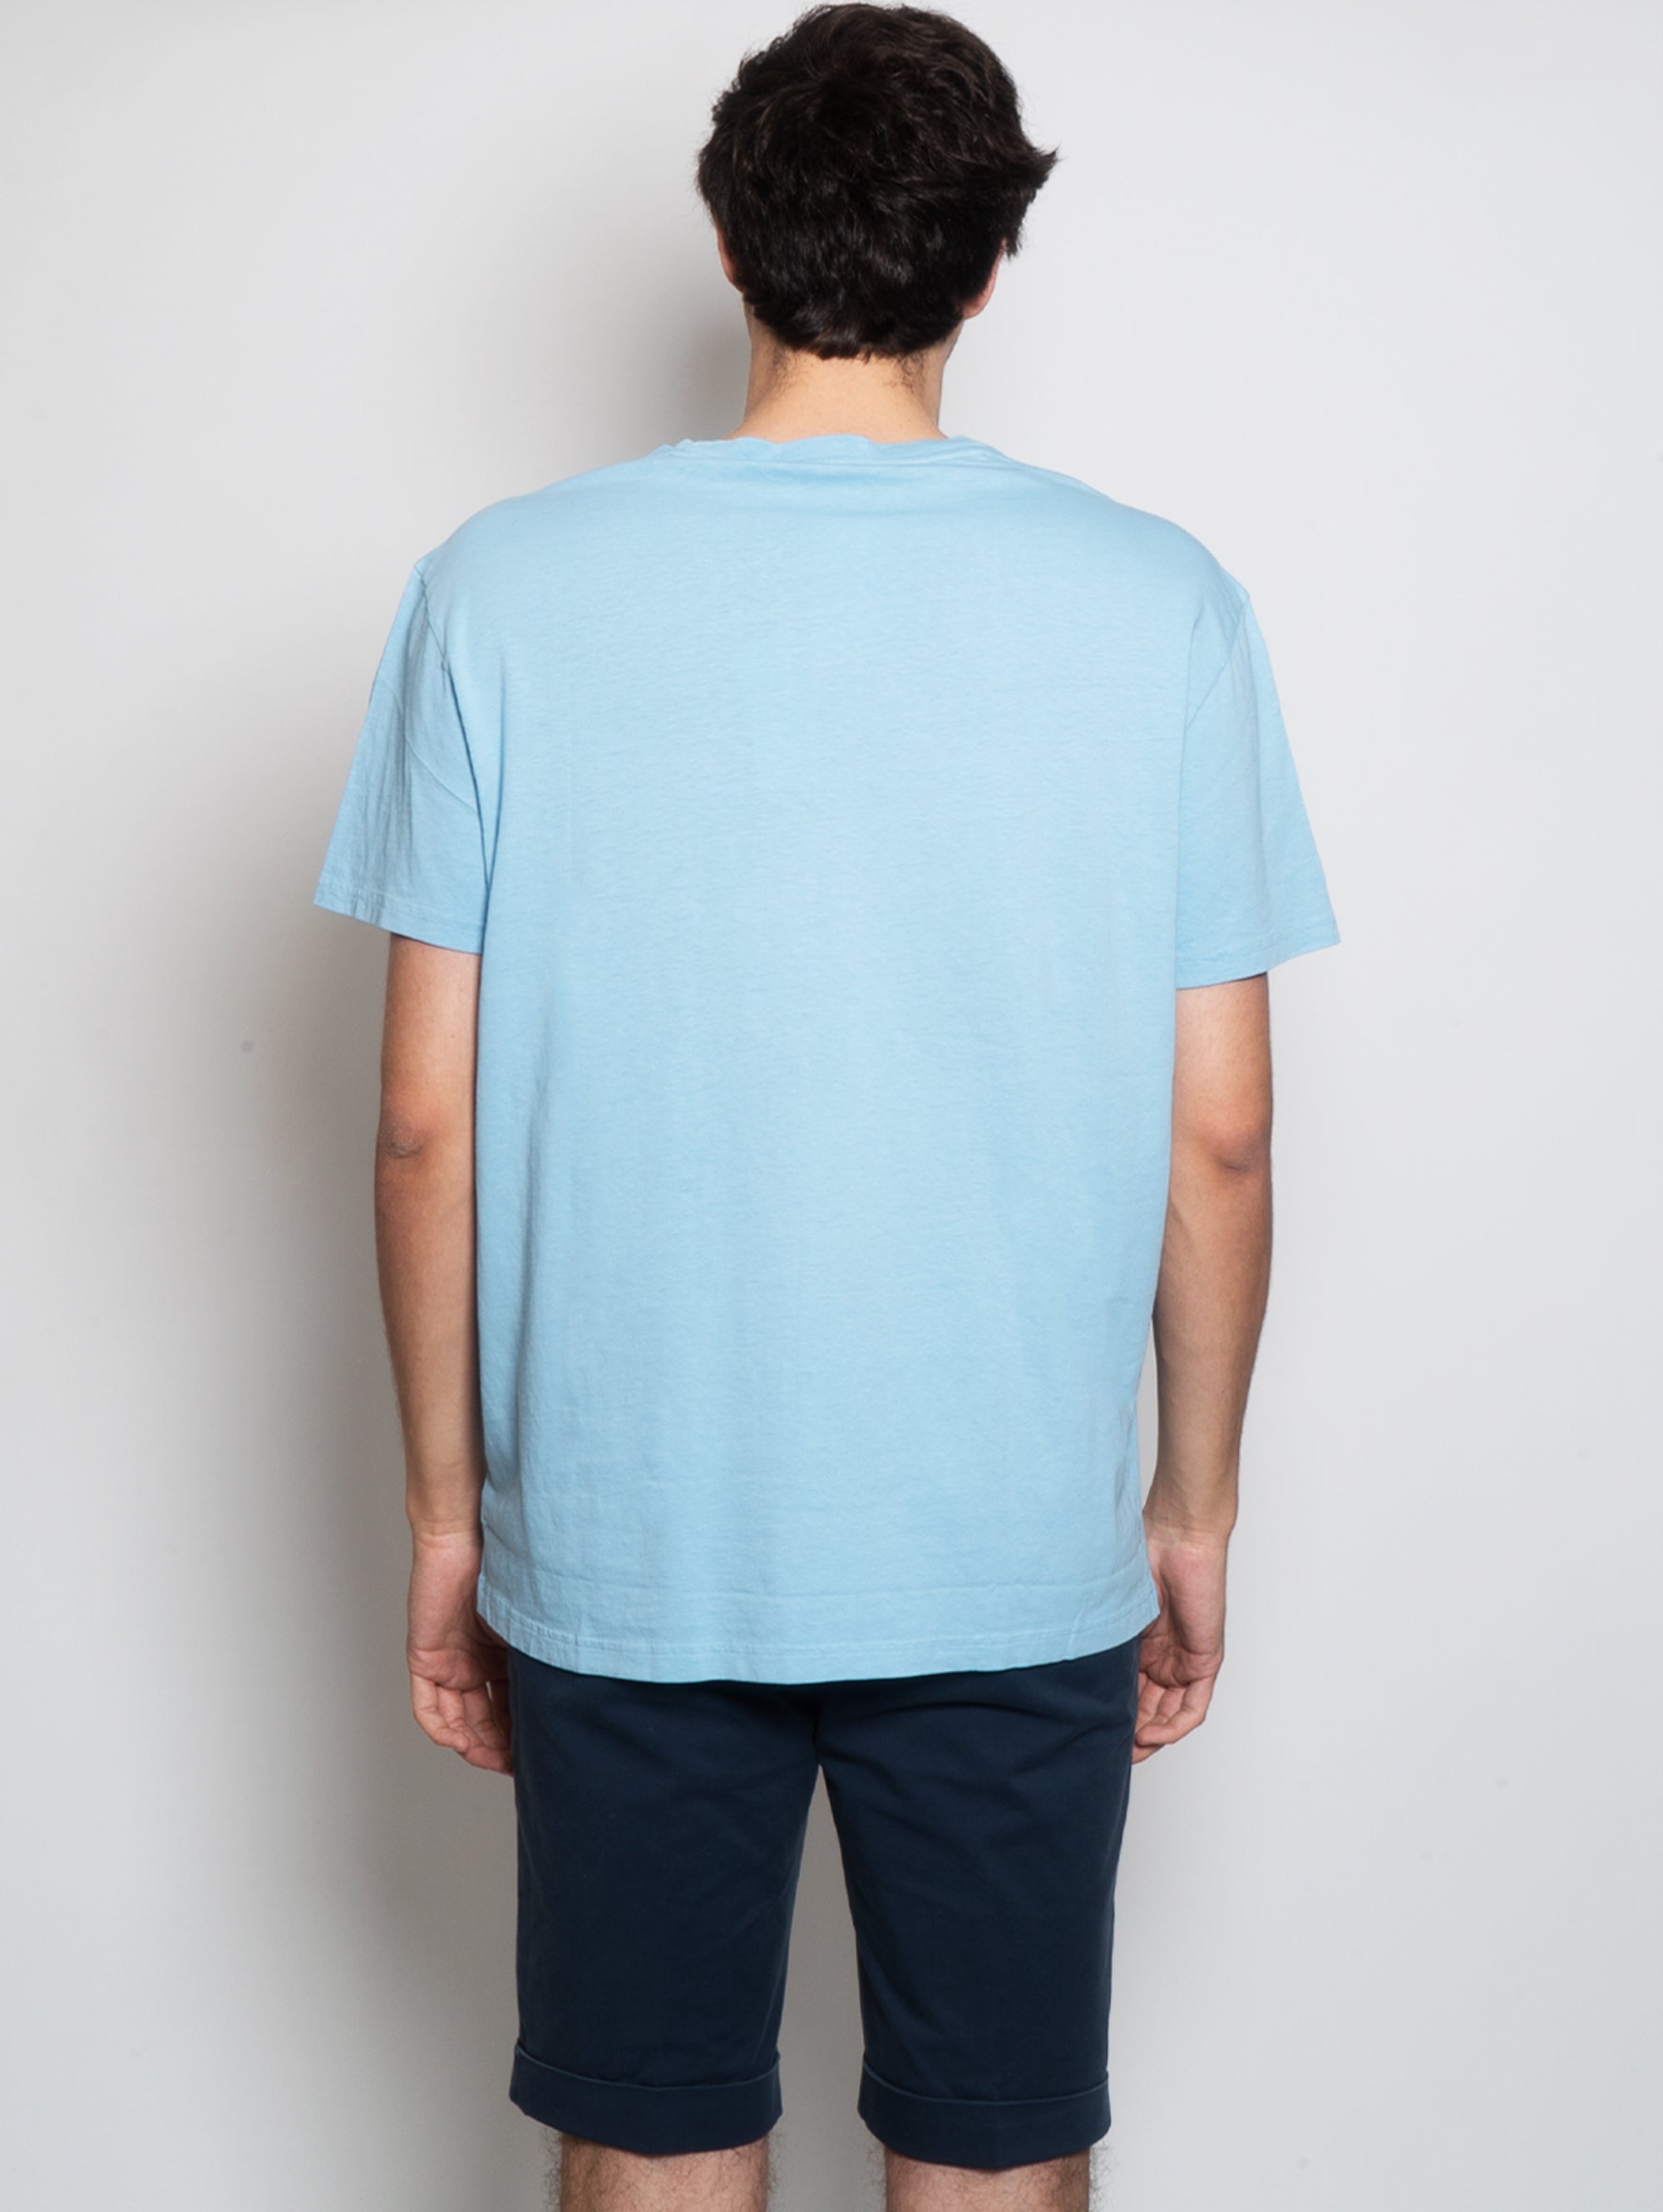 T-Shirt aus Baumwolle und Leinen in Puderblau mit Tasche